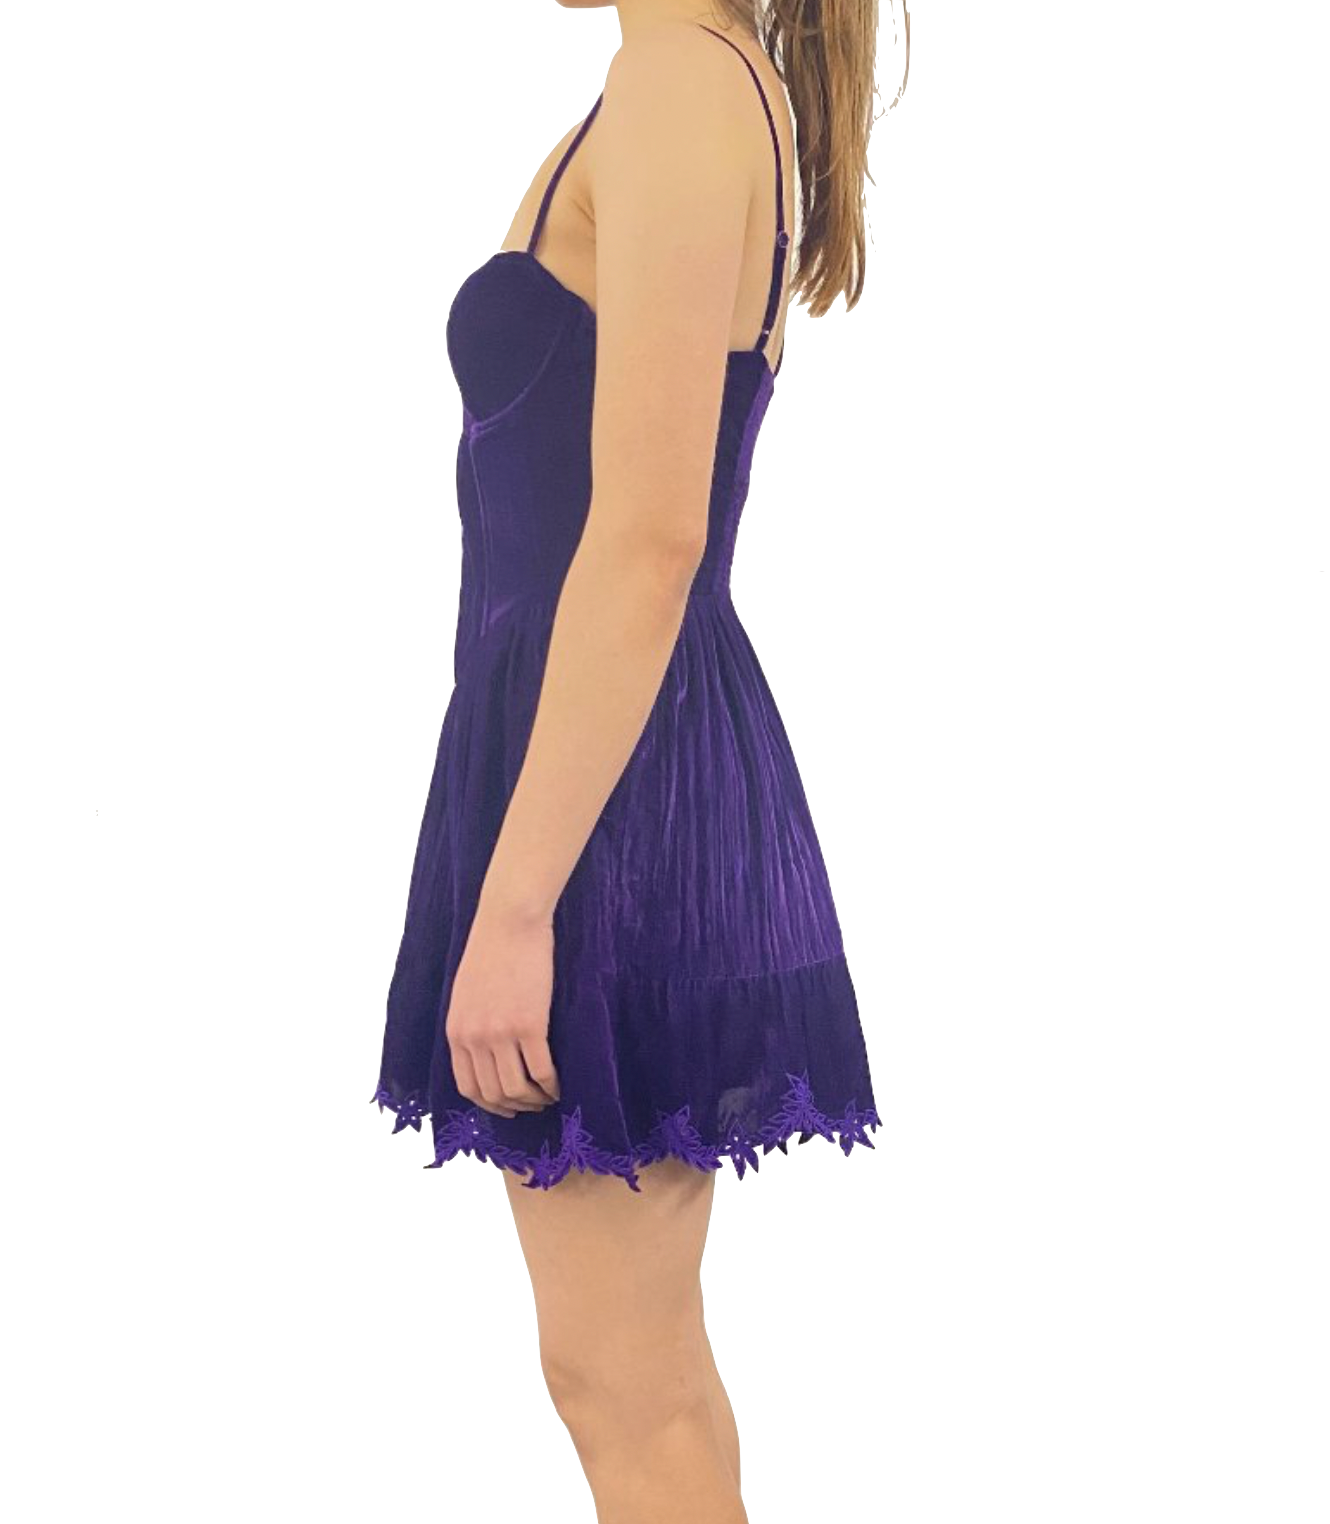 Rhea Short Dress in Purple Velvet